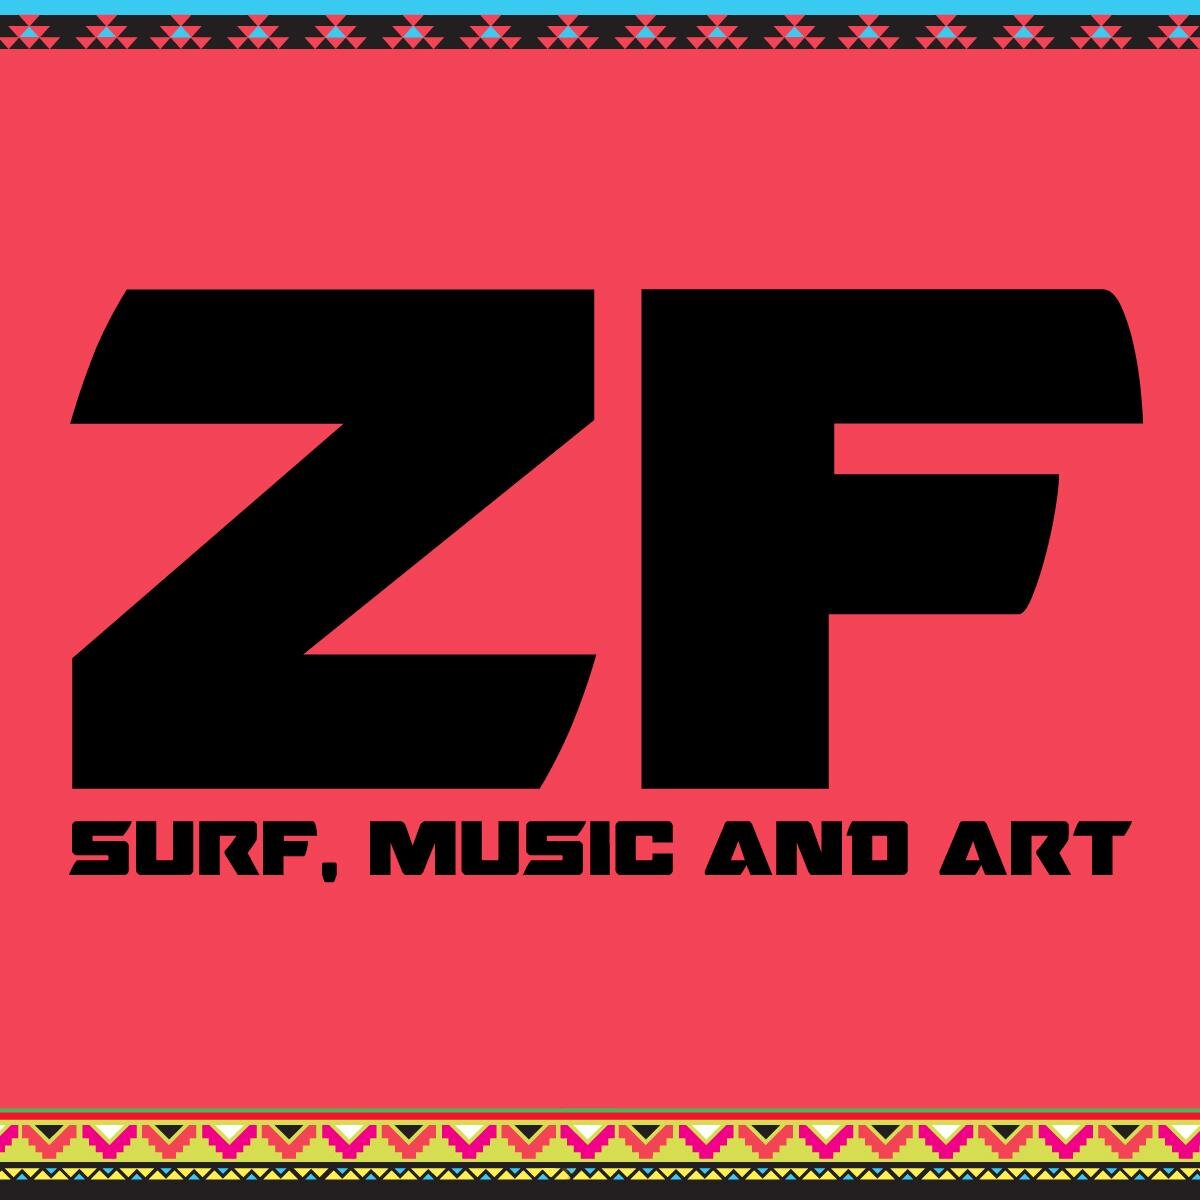 Festival independiente de surf, SUP, música y arte. Noviembre 2014.